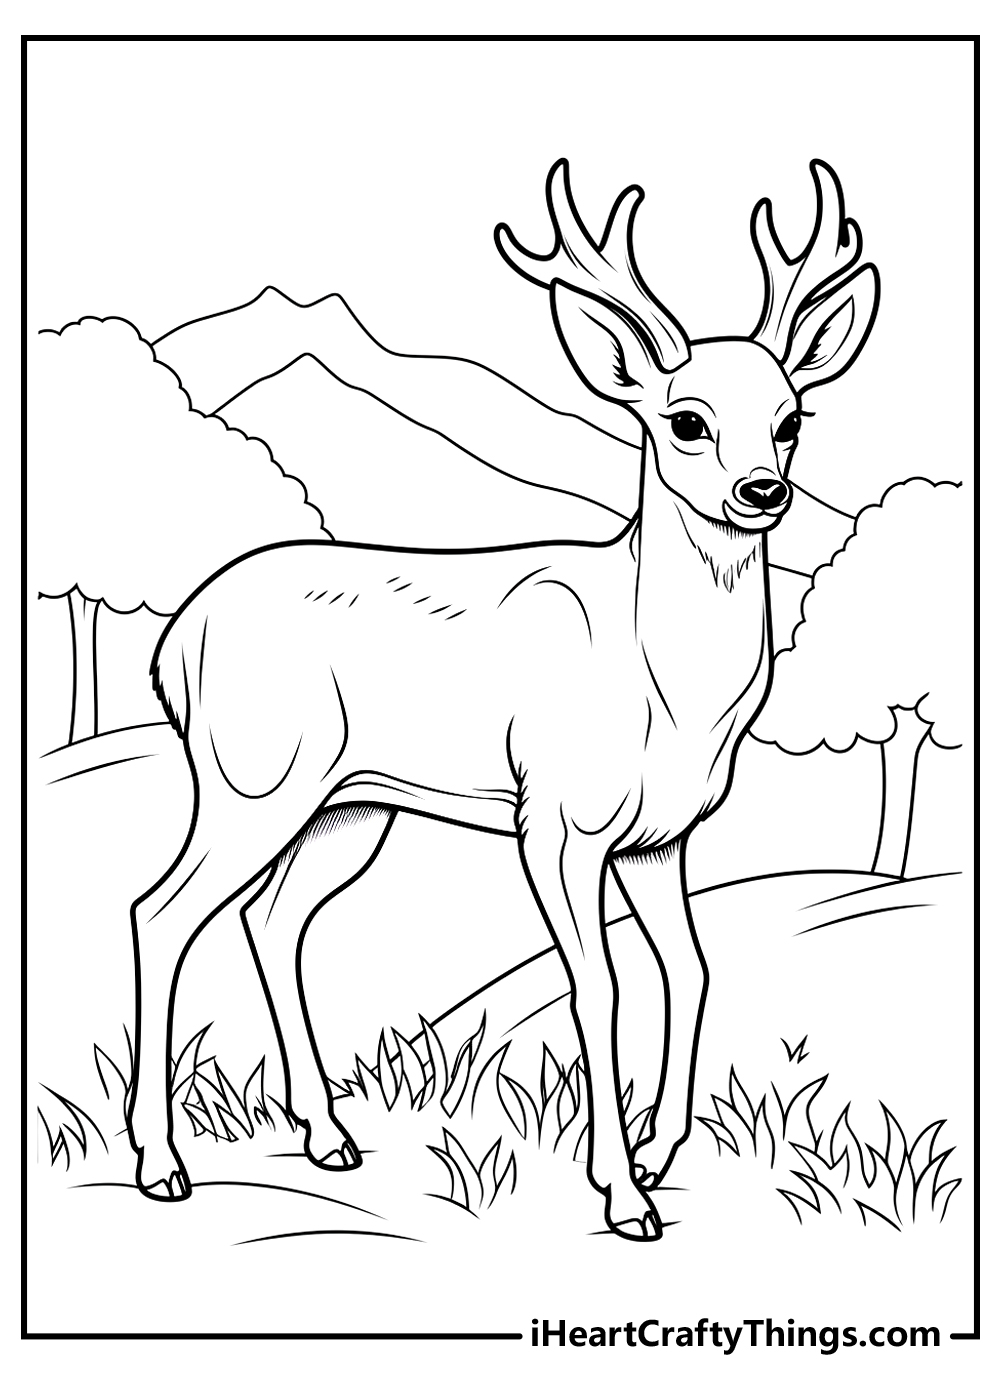 Deer coloring pages free printables